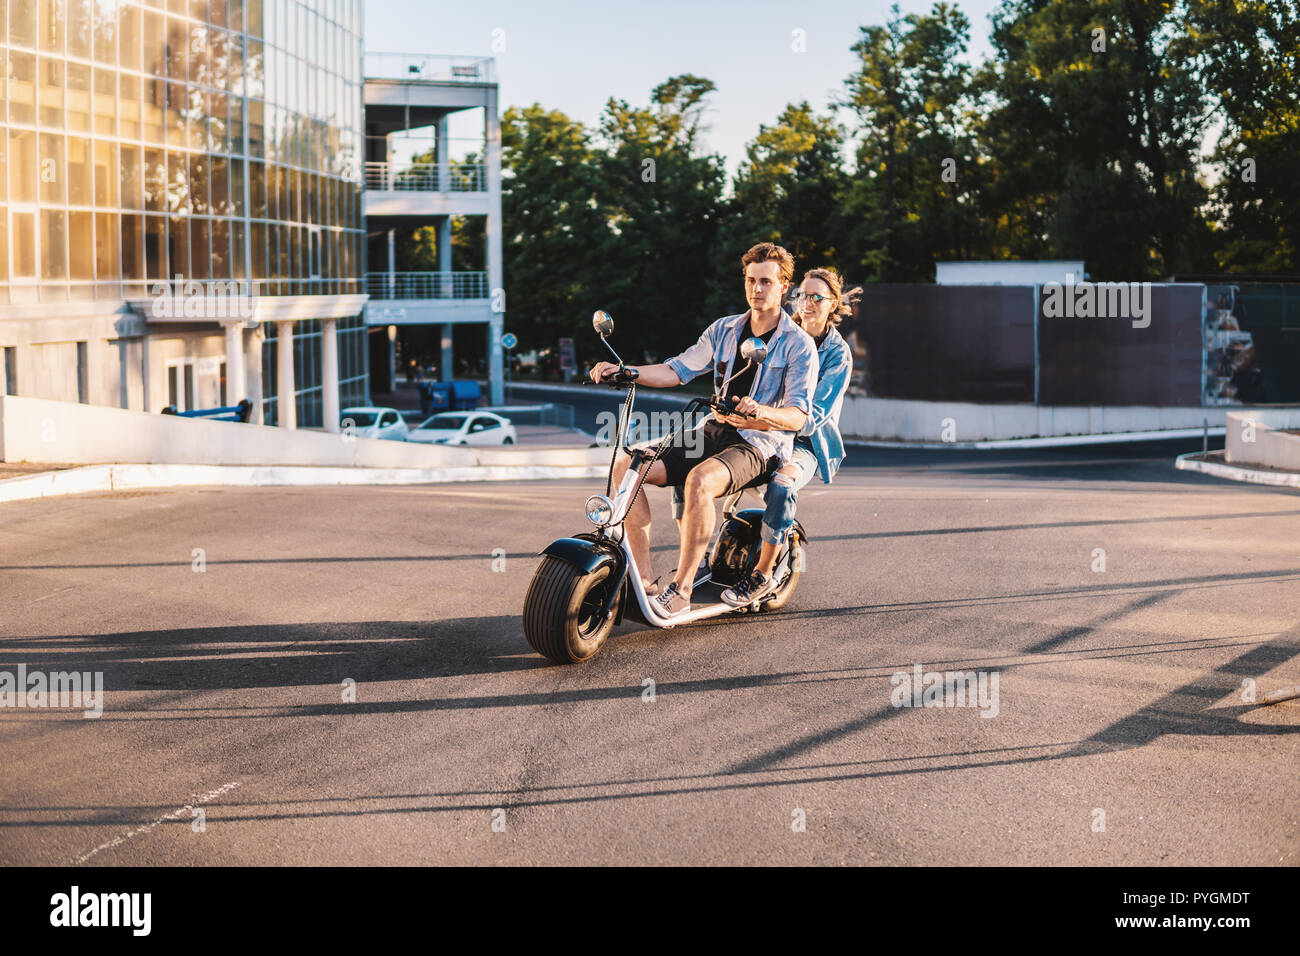 Charmante jeune couple heureux roulant vélo électrique Banque D'Images